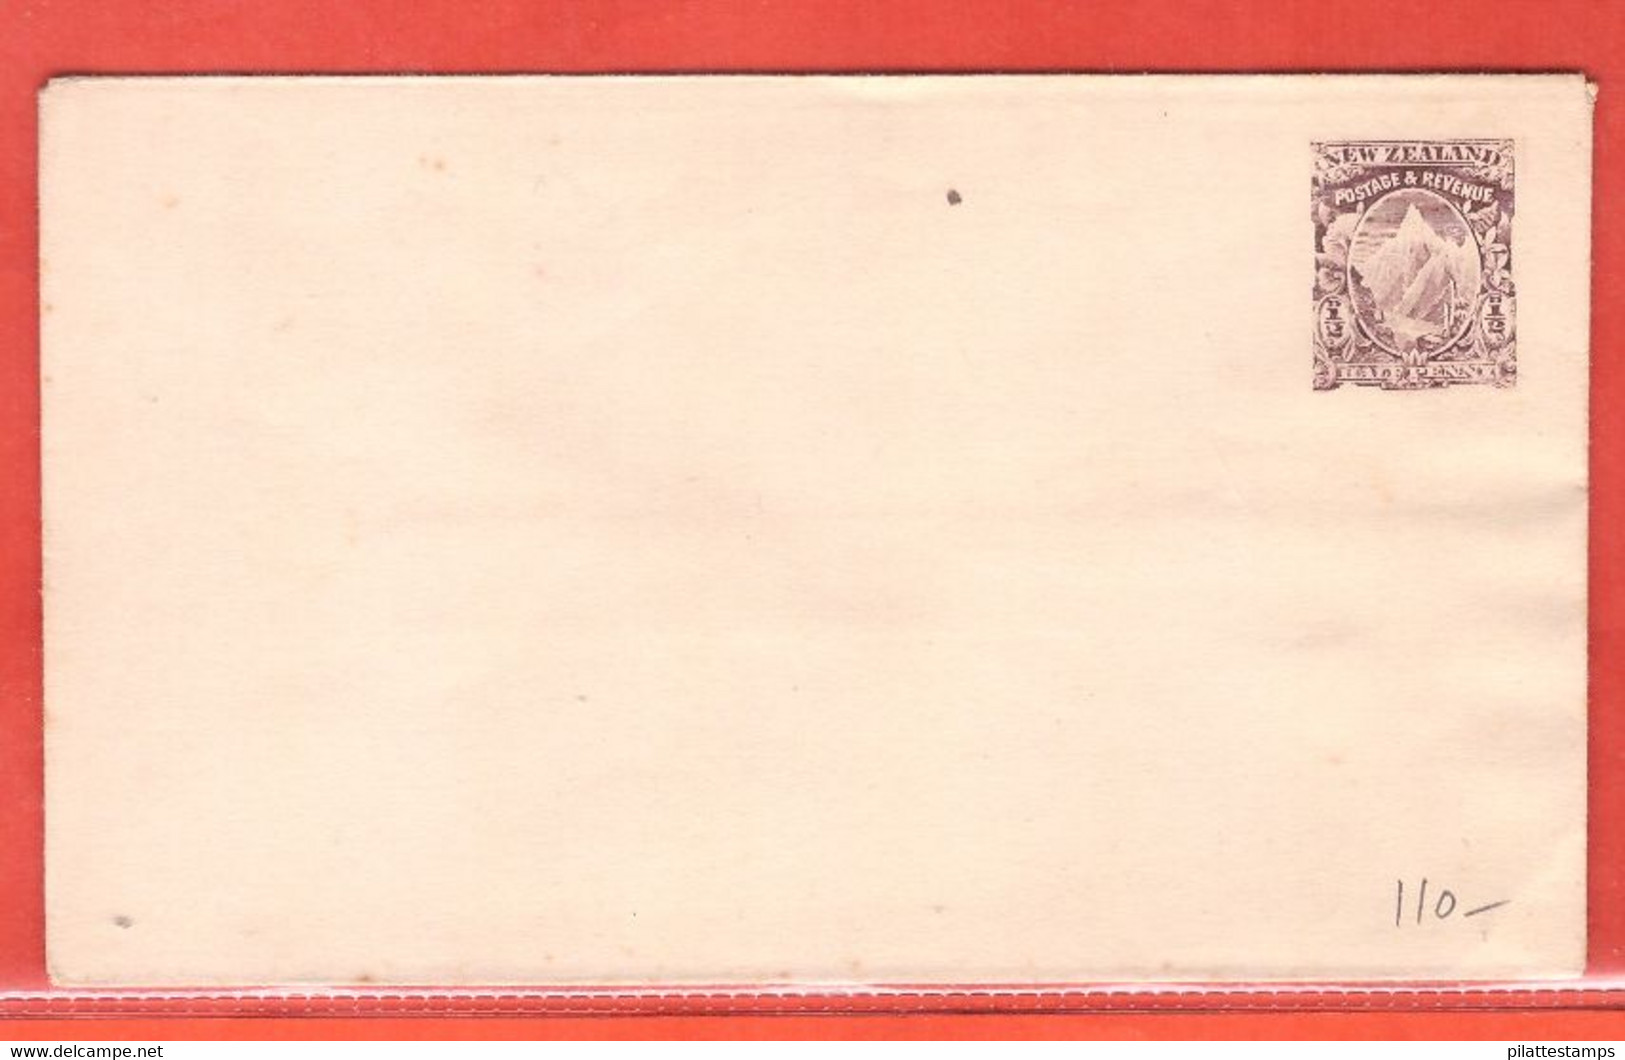 NOUVELLE ZELANDE ENTIER POSTAL 1/2 PENCE NEUF - Postal Stationery